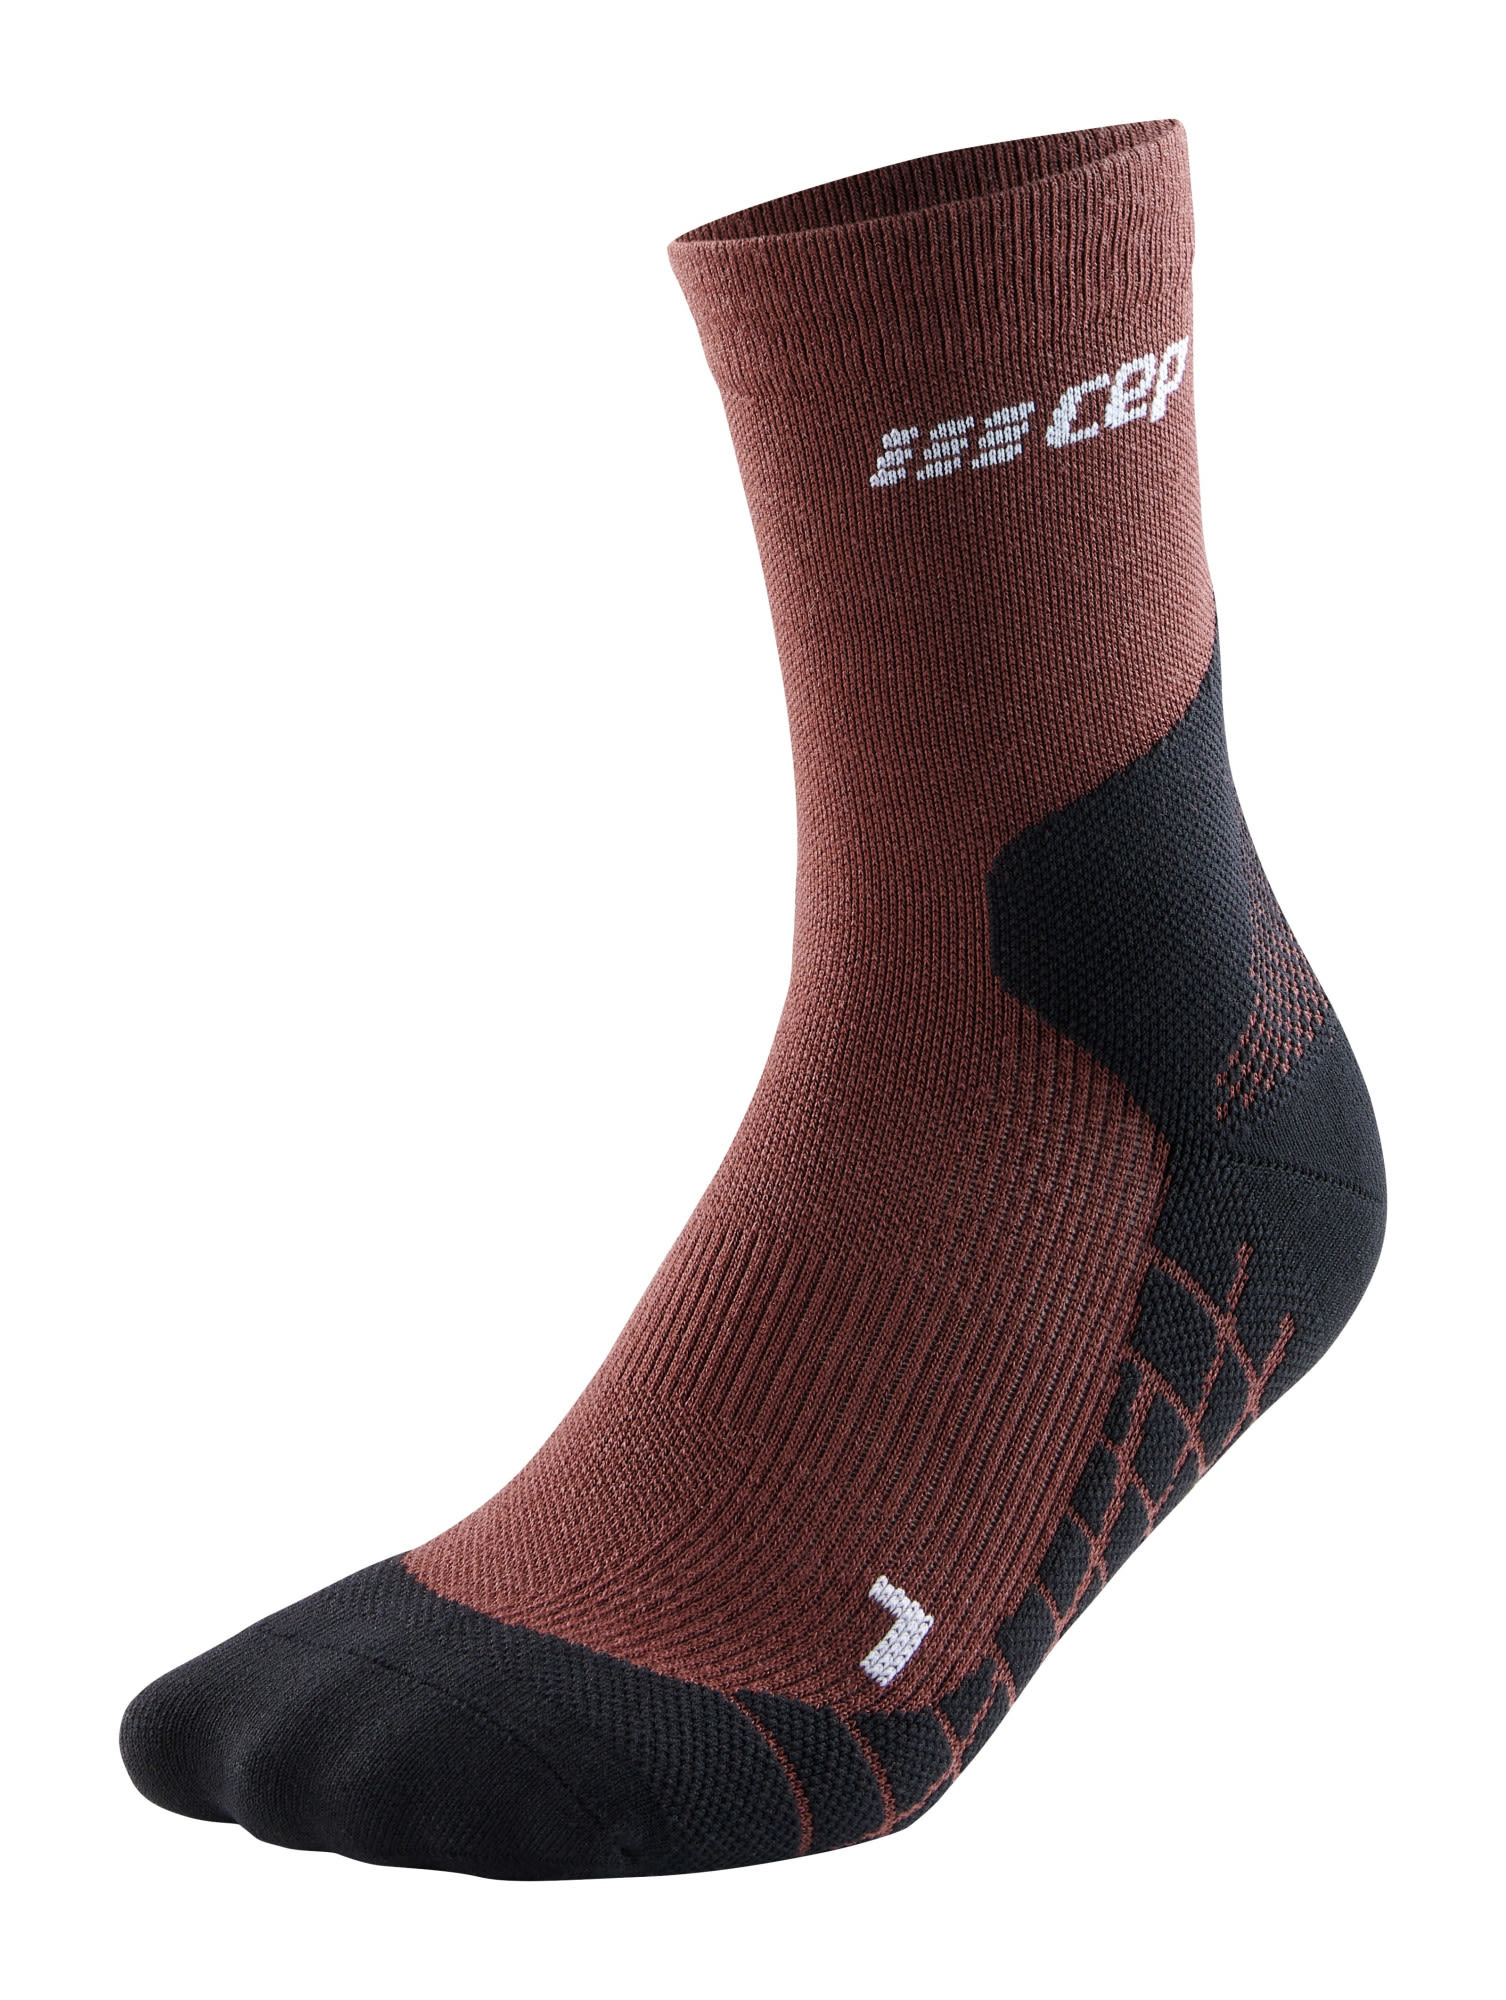 Cep W Light Merino Socks Hiking Mid Cut Braun | Größe IV | Damen Kompressionss